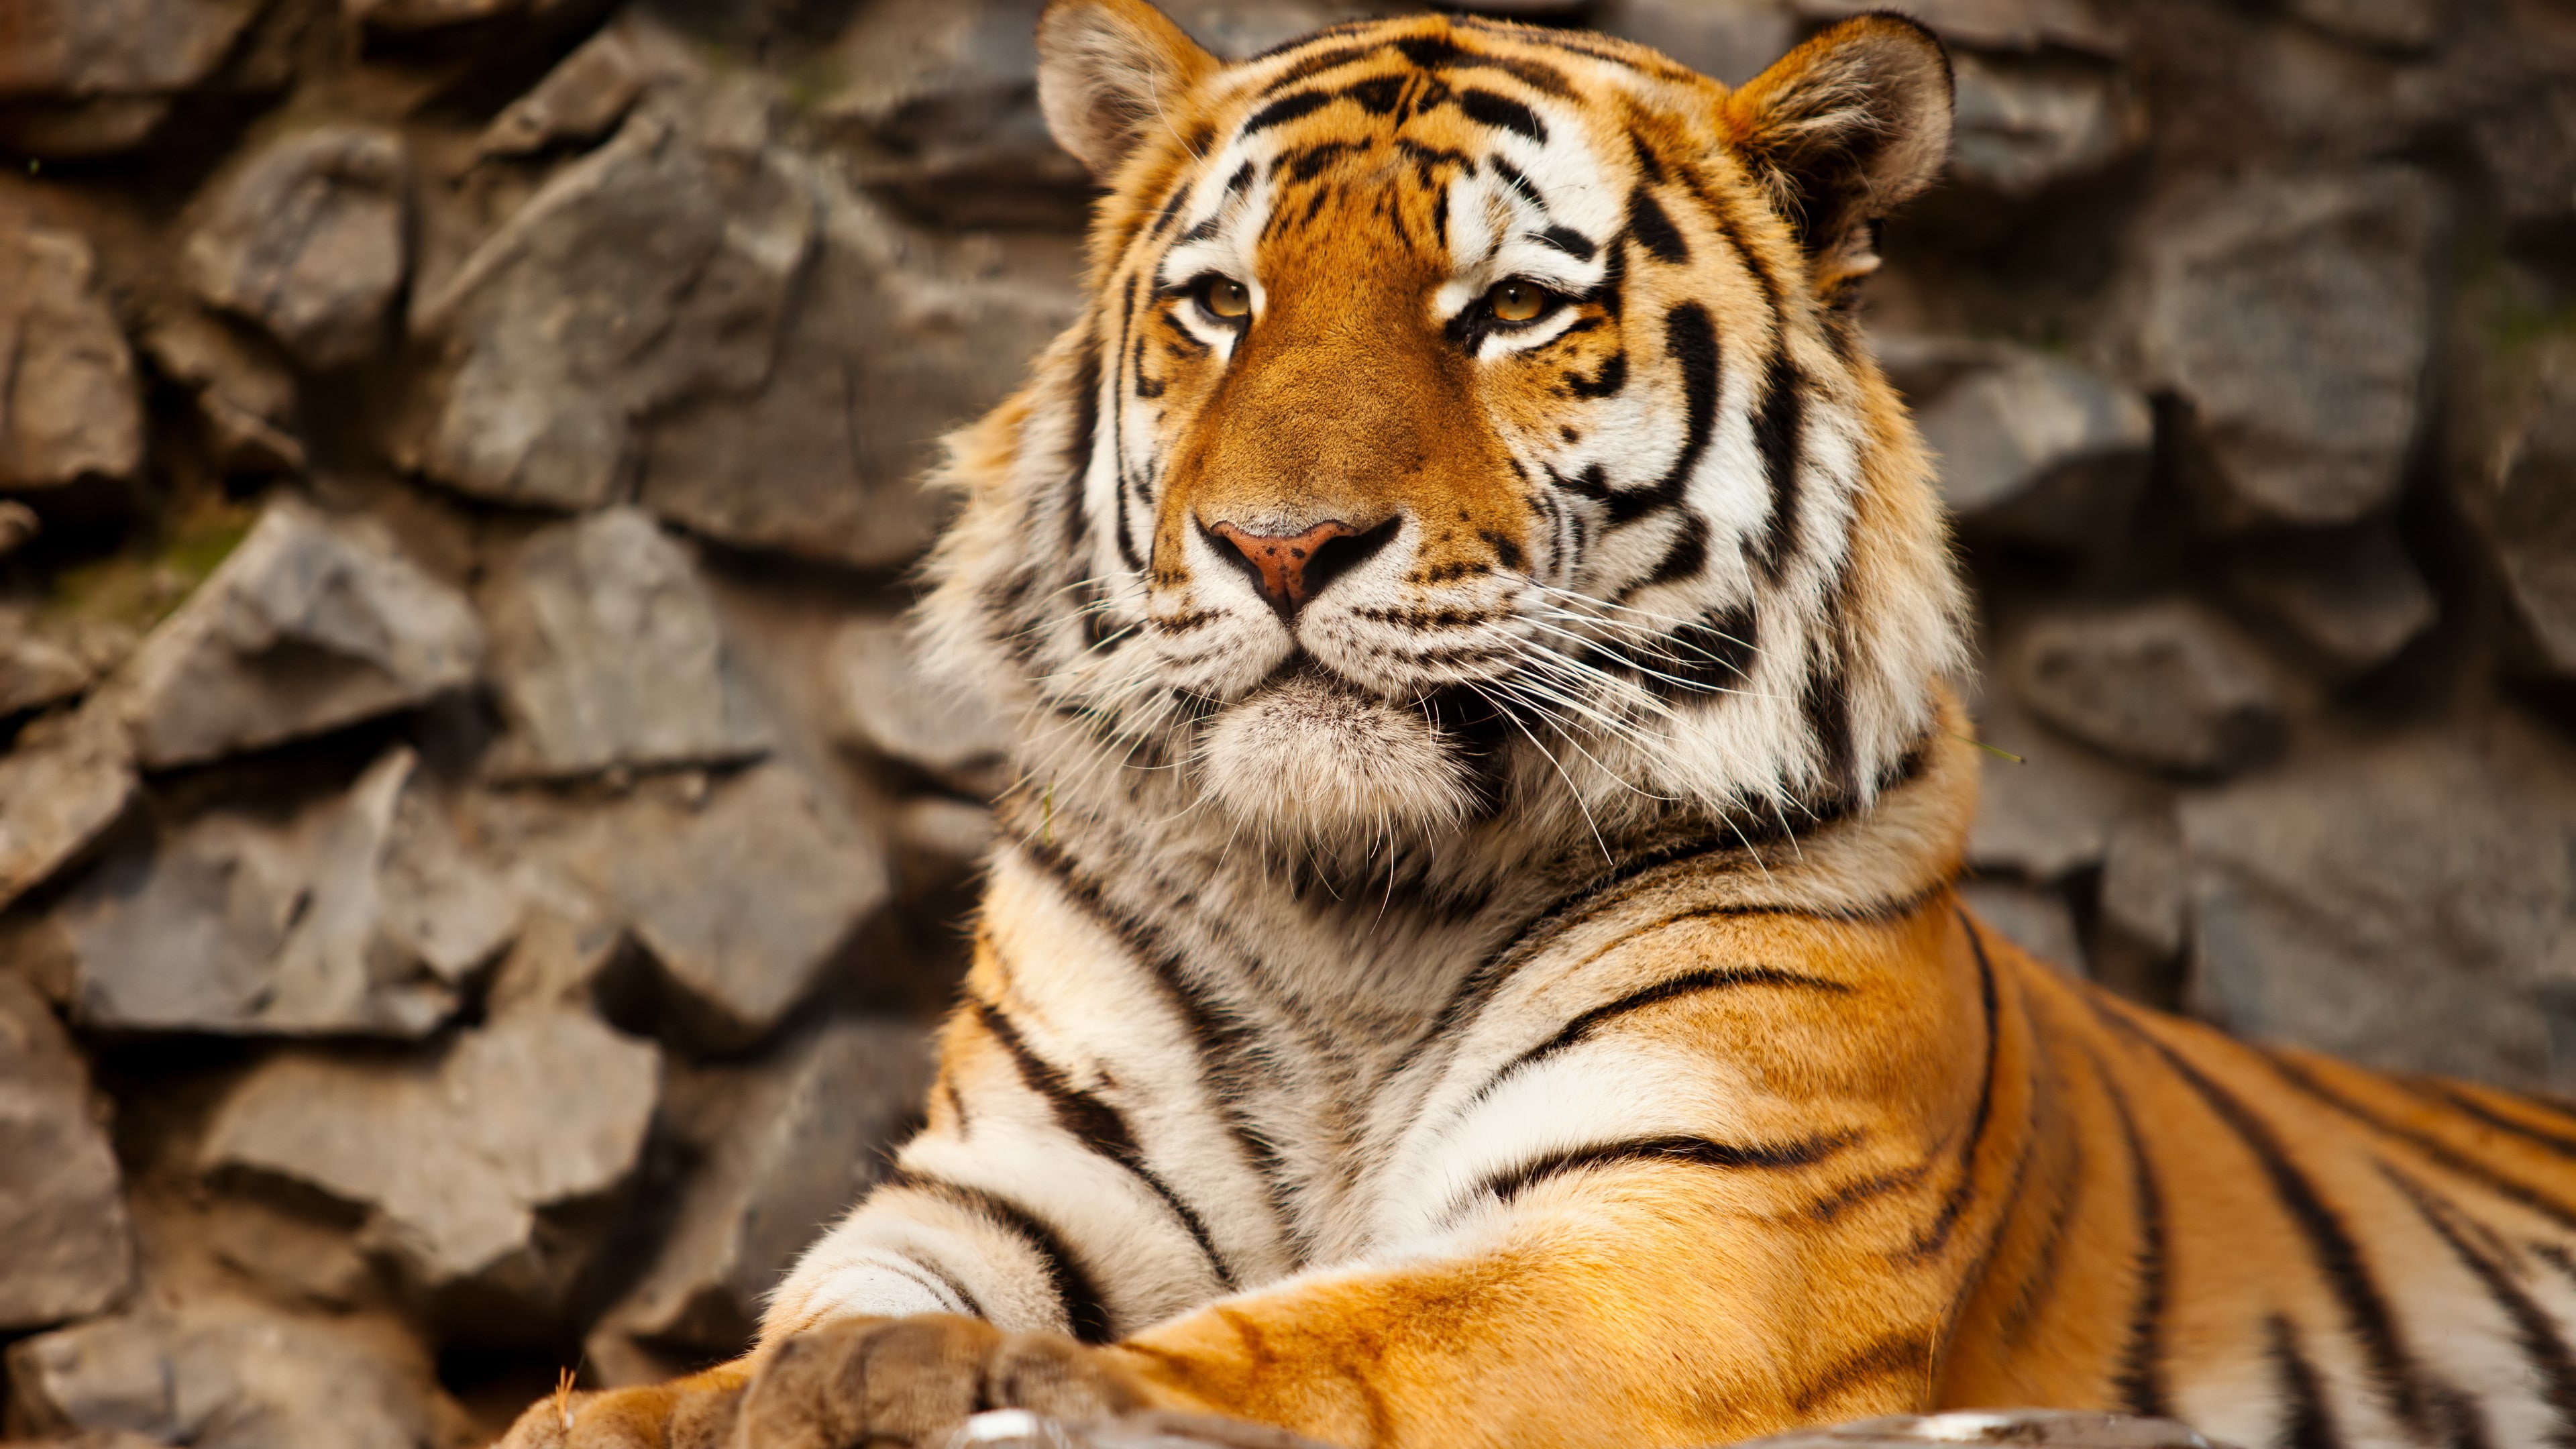 tiger hd wallpaper,tiger,mammal,wildlife,terrestrial animal,vertebrate